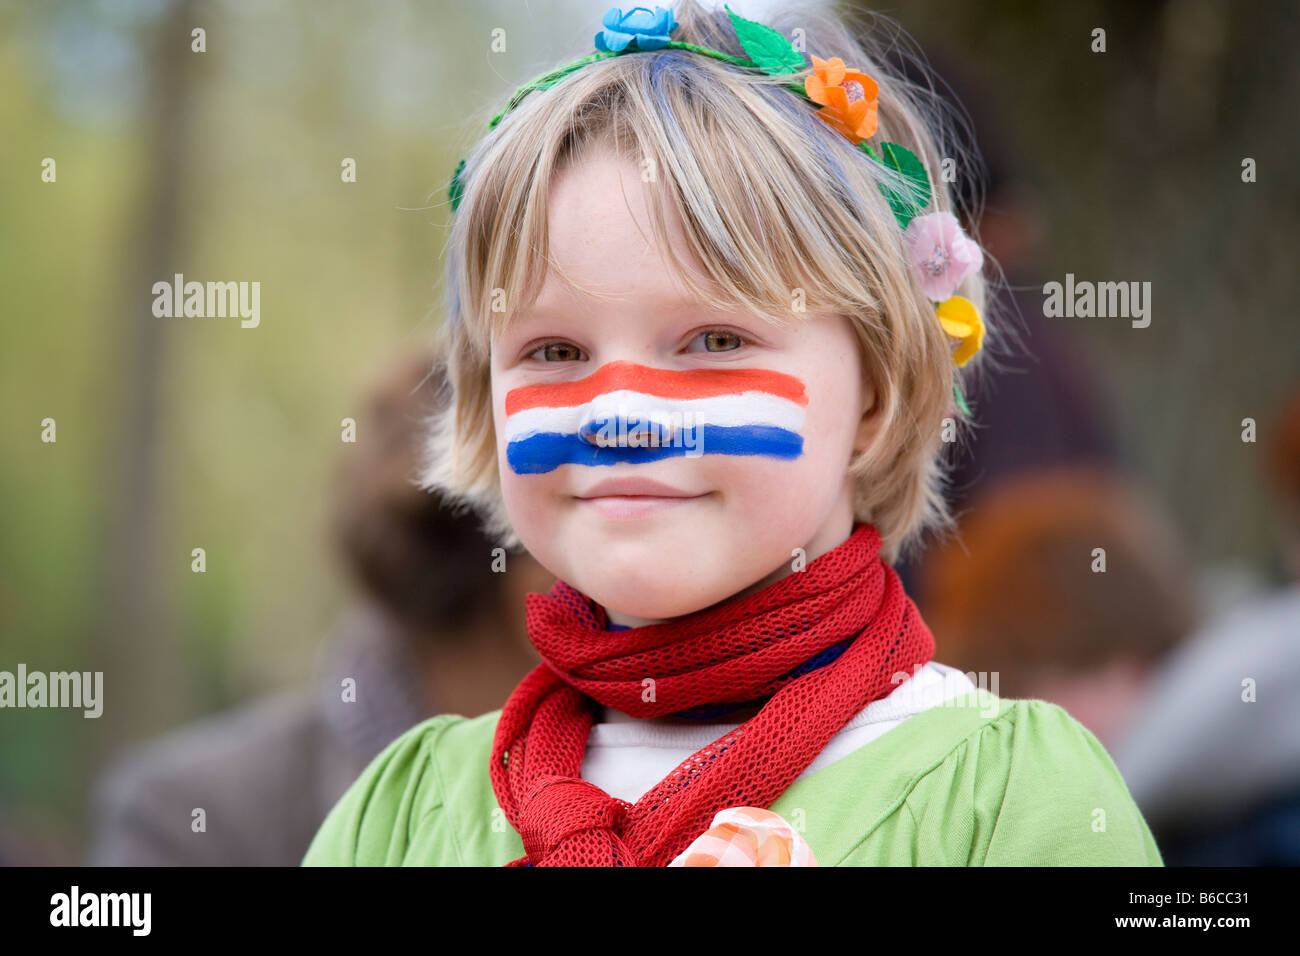 Chica con bandera holandesa sobre la pintura facial (Queensday Kingsday) Reyes Magos, fiestas de cumpleaños del Rey en Amsterdam Holanda Holanda bandera. Foto de stock